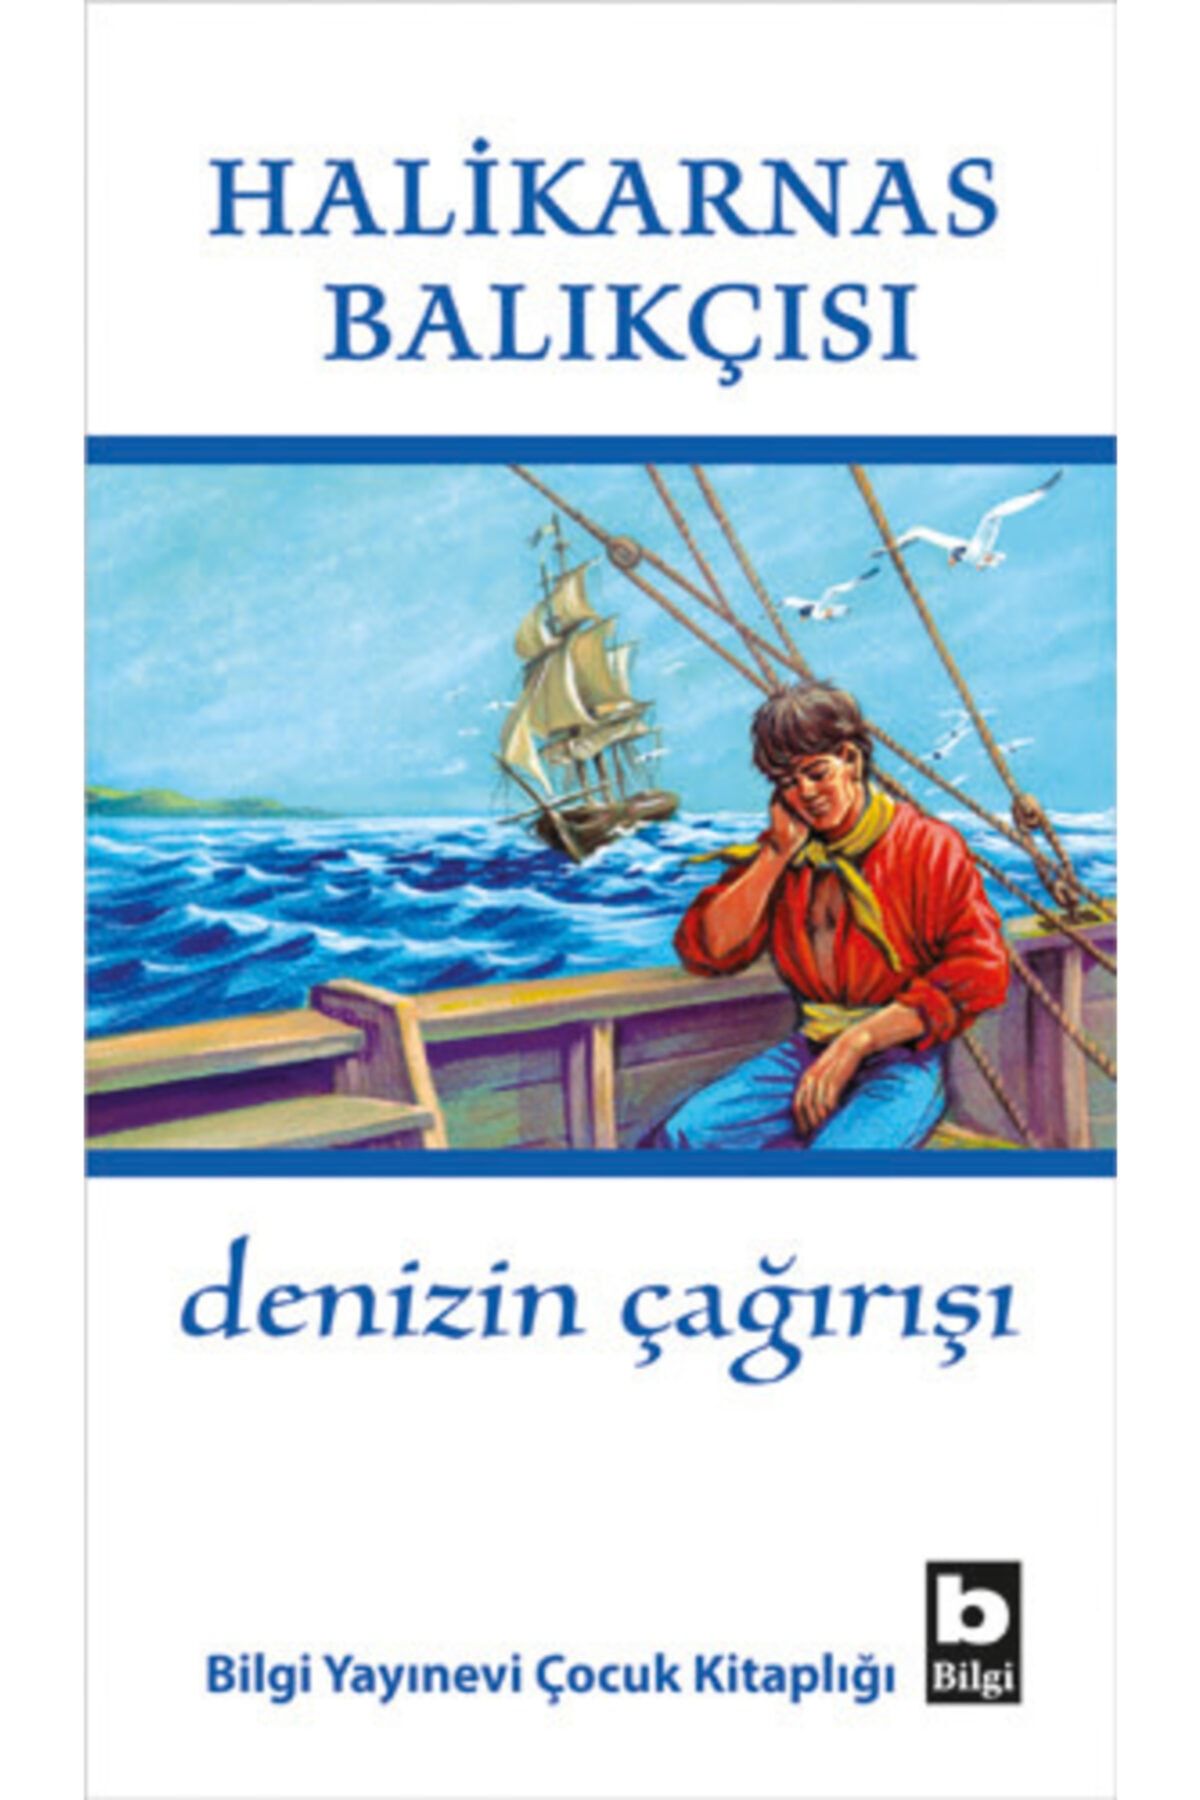 Bilgi Yayınları Denizin Çağırışı - Çocuk - Cevat Şakir Kabaağaçlı (halikarnas Balıkçısı) Kitabı